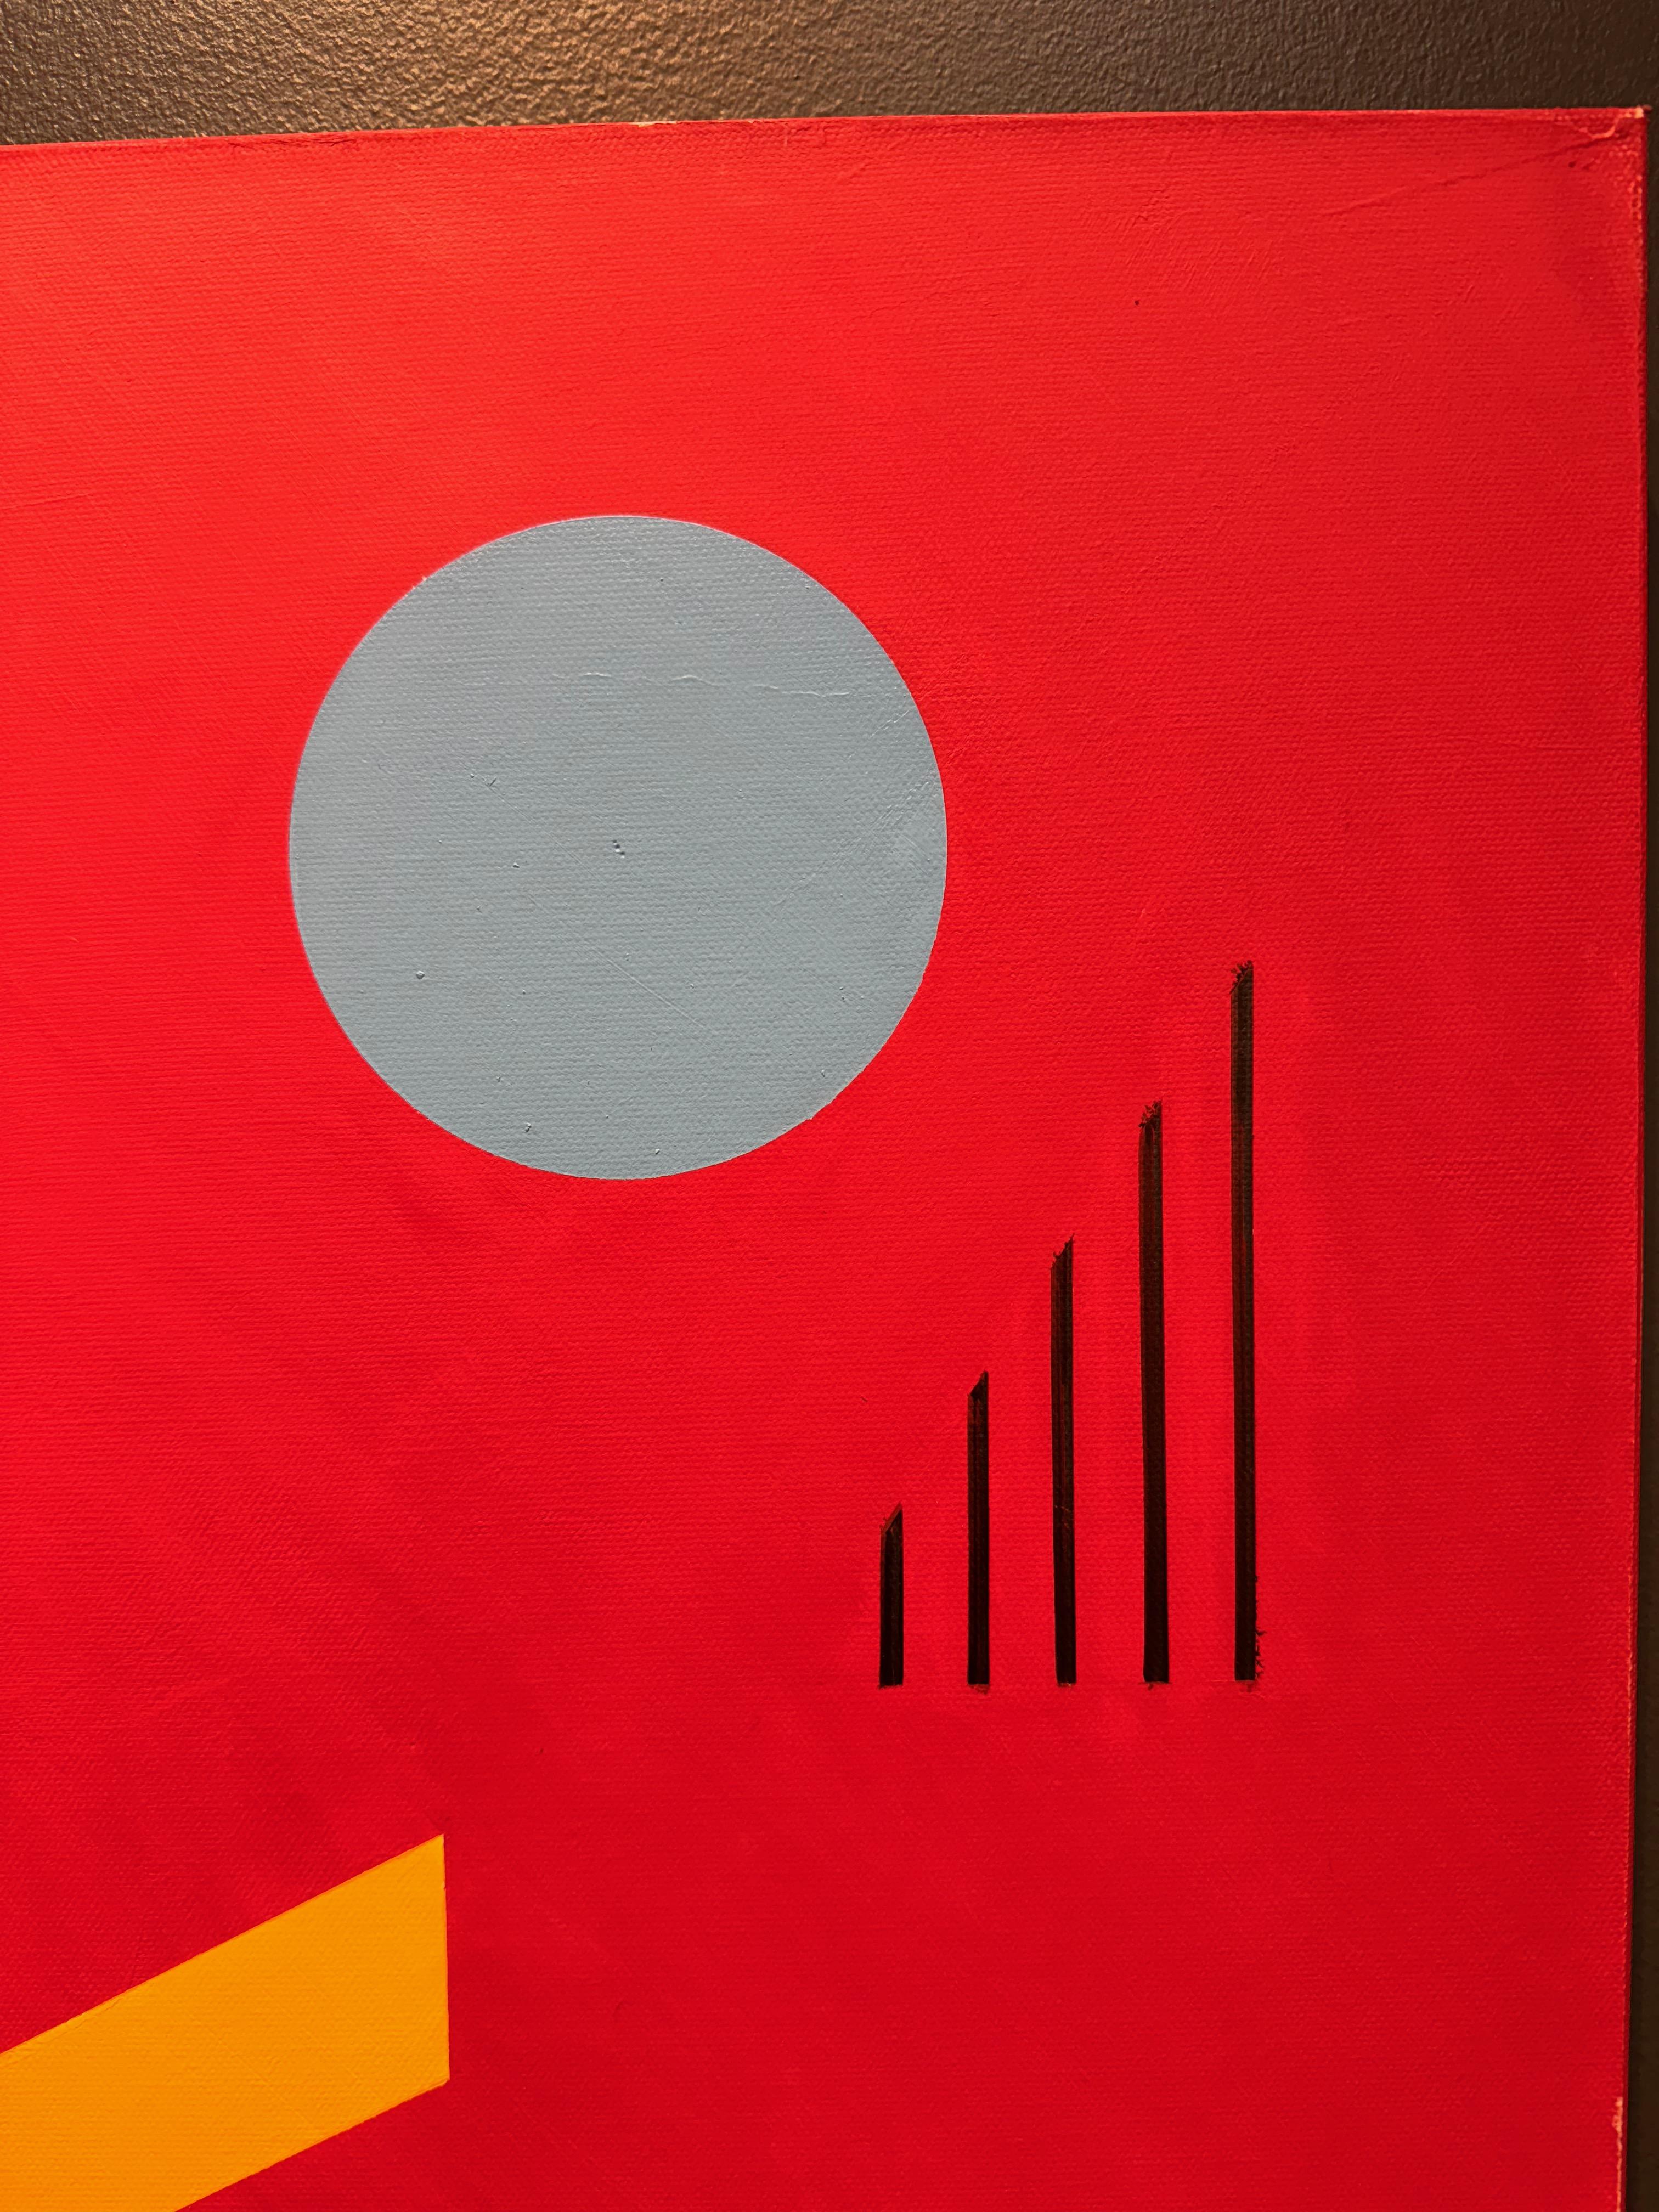 Trio sur rouge peinture à l'huile abstraite géométrique
Signée par l'artiste au verso, huile sur toile 48x24
Jaro est né en 1934 à Prague, en République tchèque. Depuis son enfance, c'est le cours d'art à l'école qu'il apprécie le plus. Presque tous